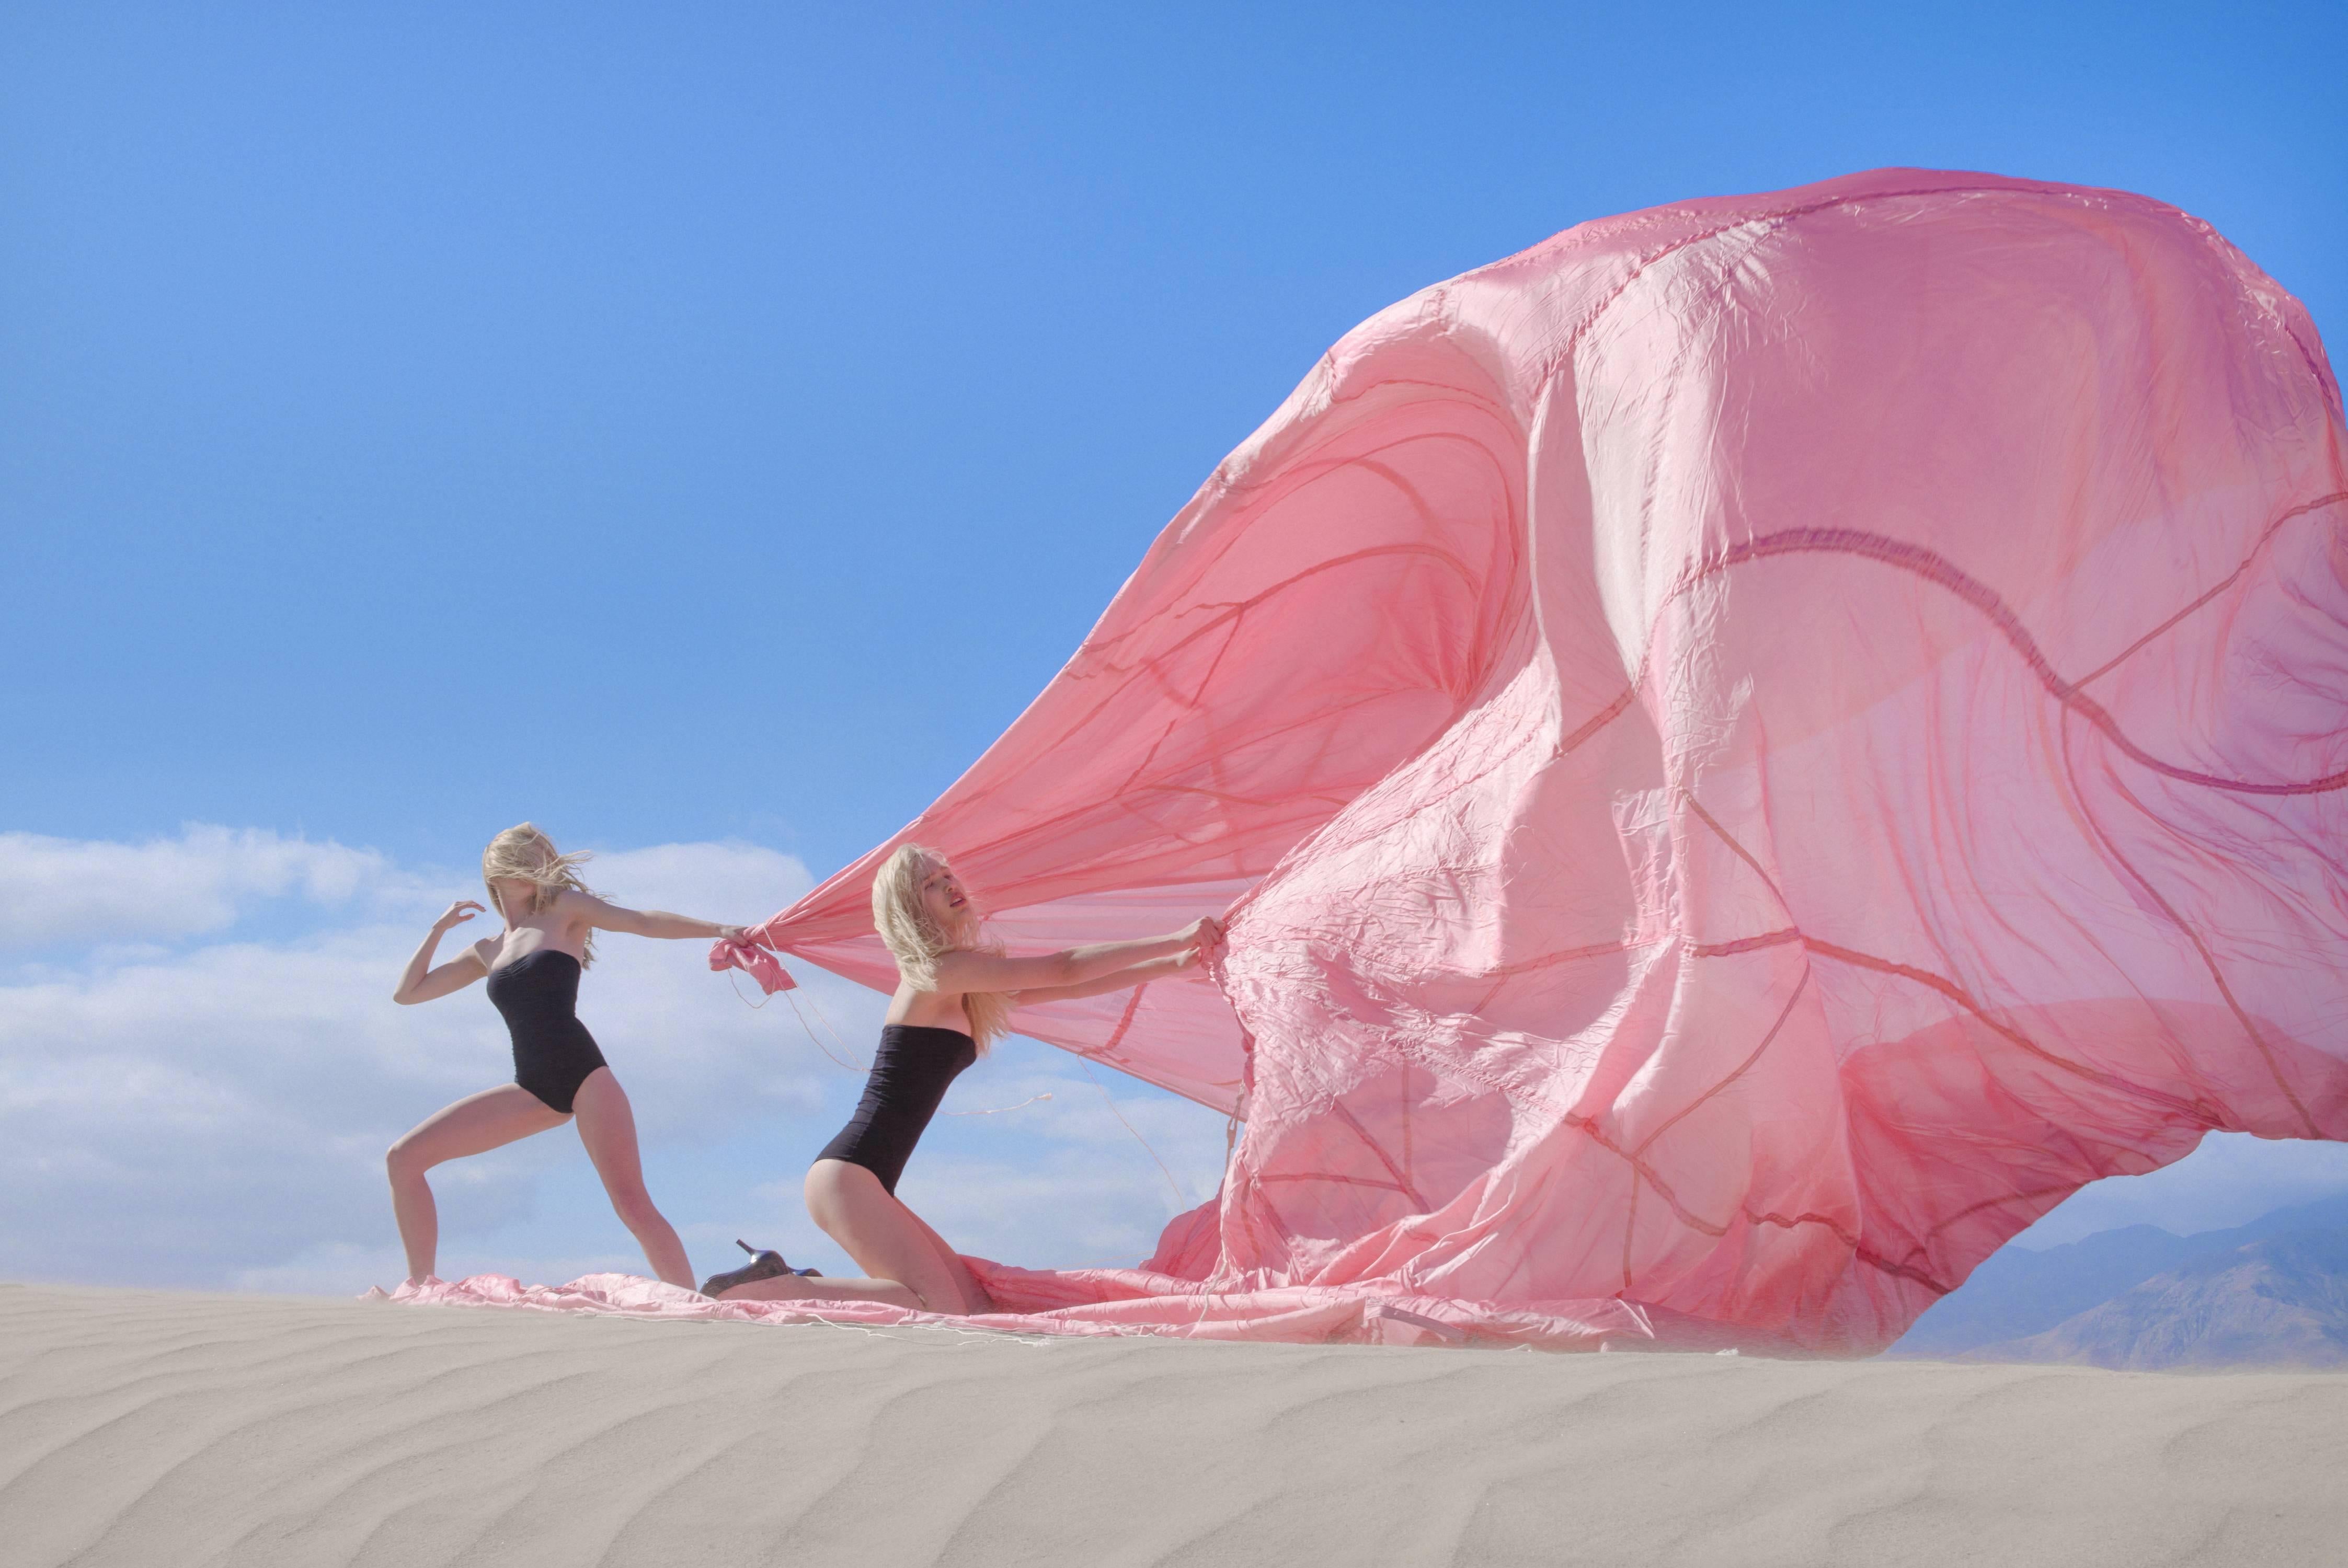 Tyler Shields Color Photograph - Pink Parachute